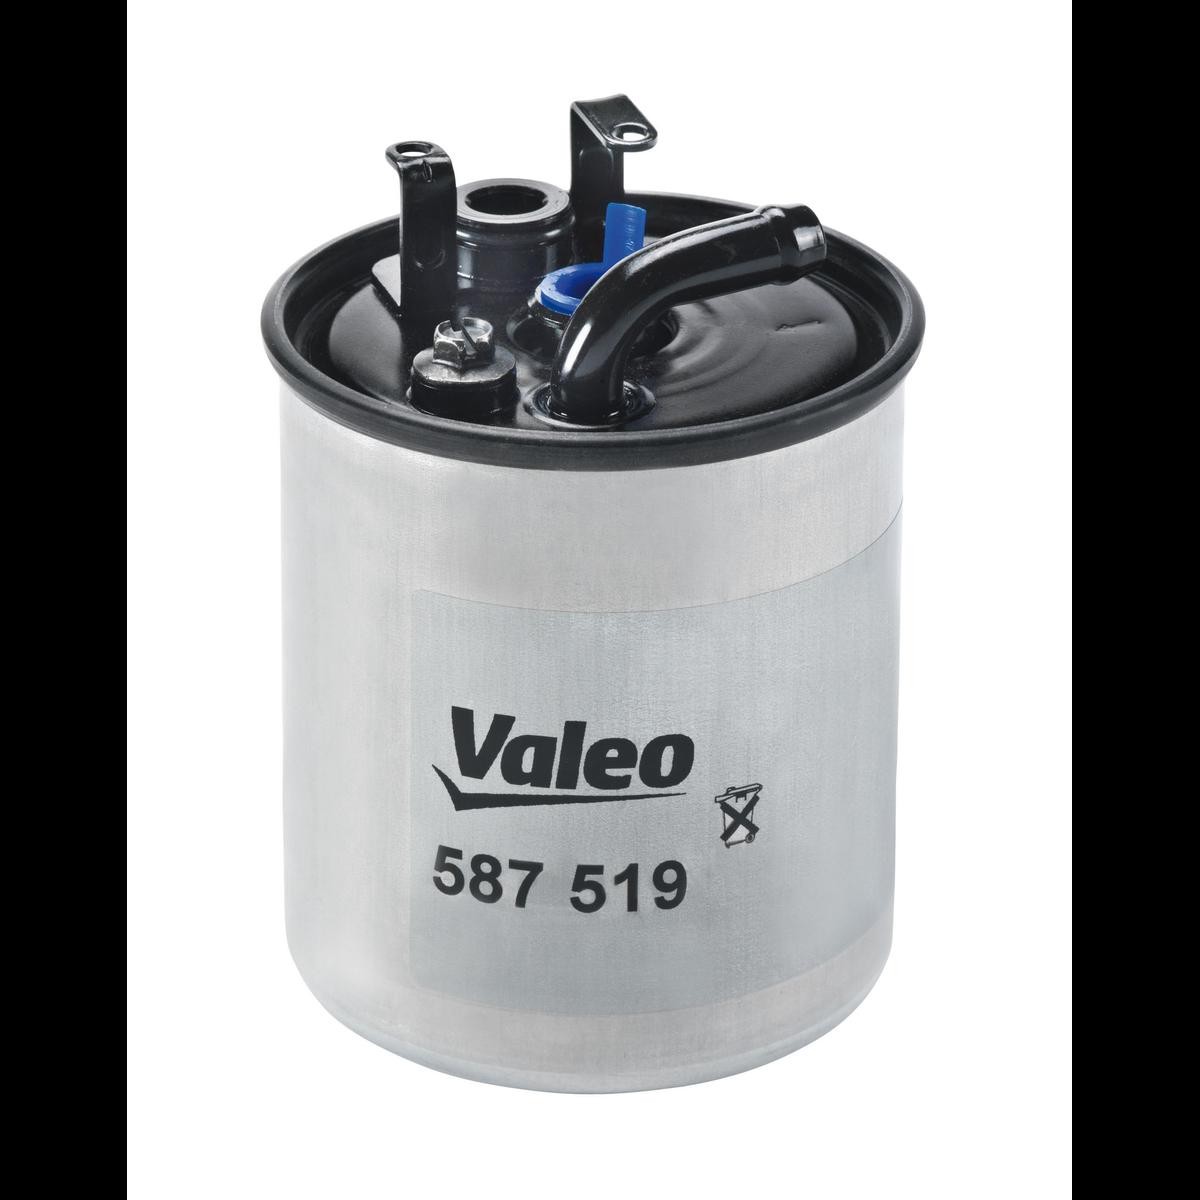 VALEO Kraftstofffilter MERCEDES-BENZ 587519 FF5647,6110920101,A6110920101 Leitungsfilter,Spritfilter von VALEO